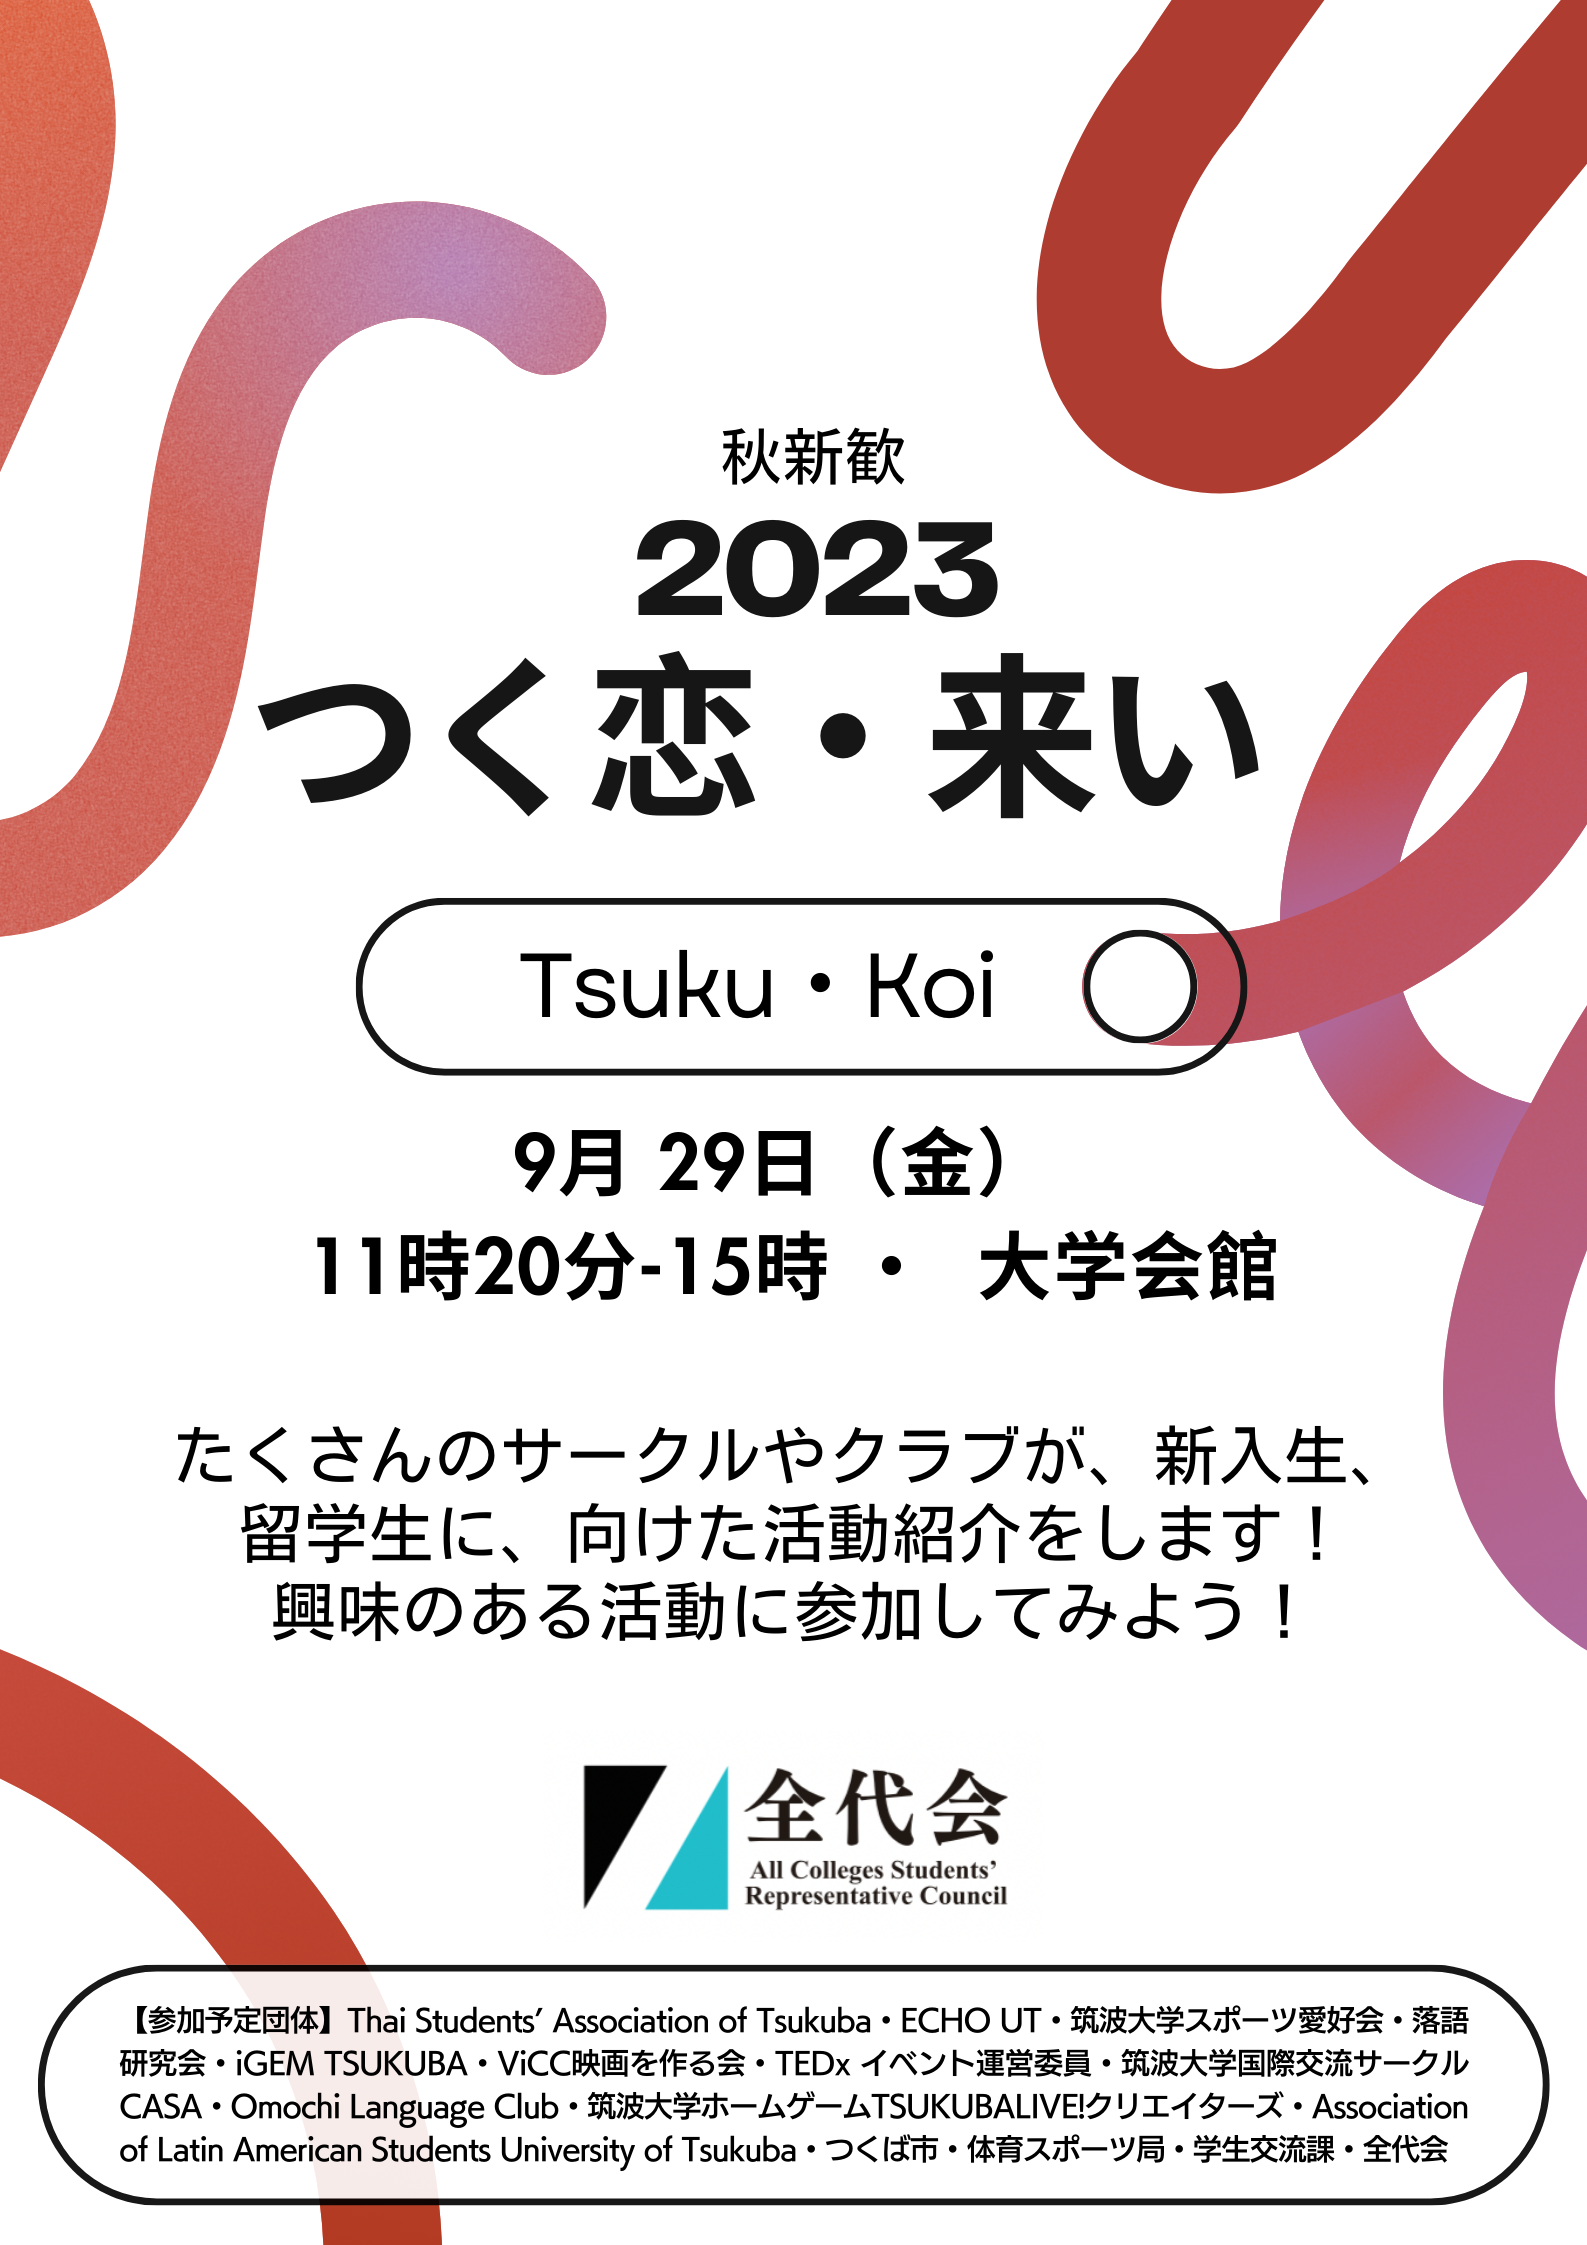 Tsuku・koi 2023を開催しました。